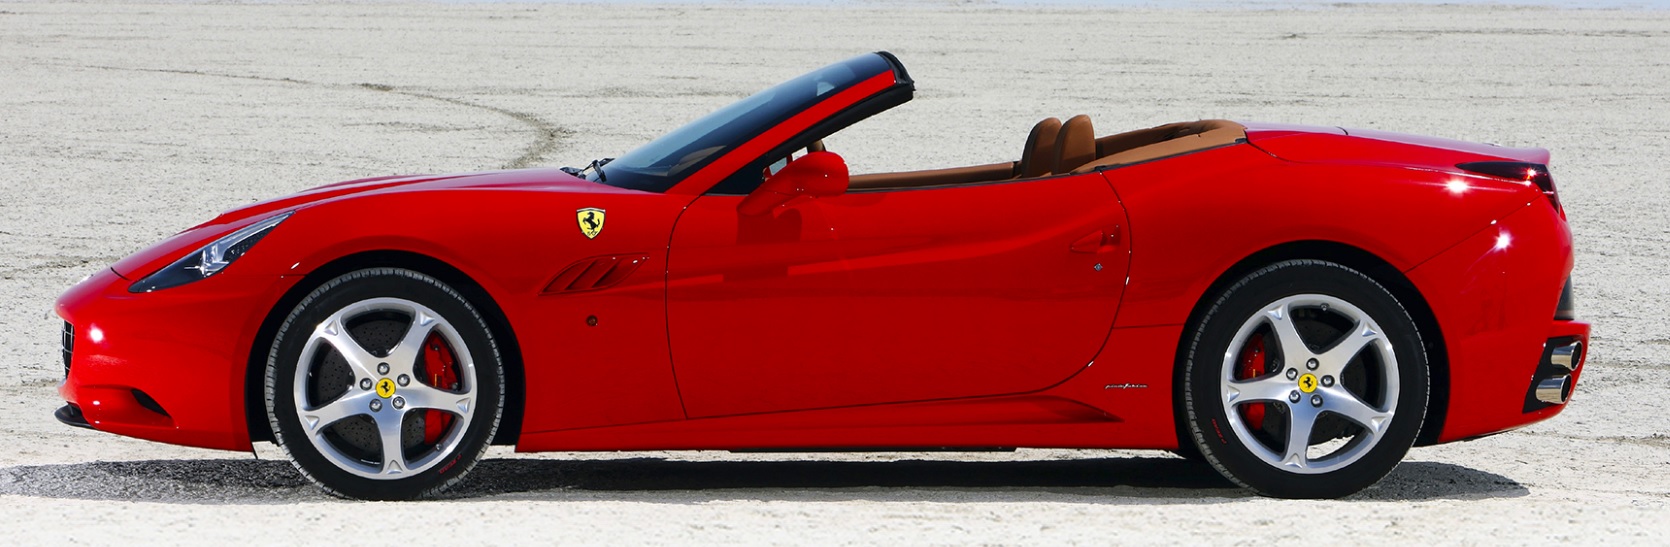 Ferrari california 30